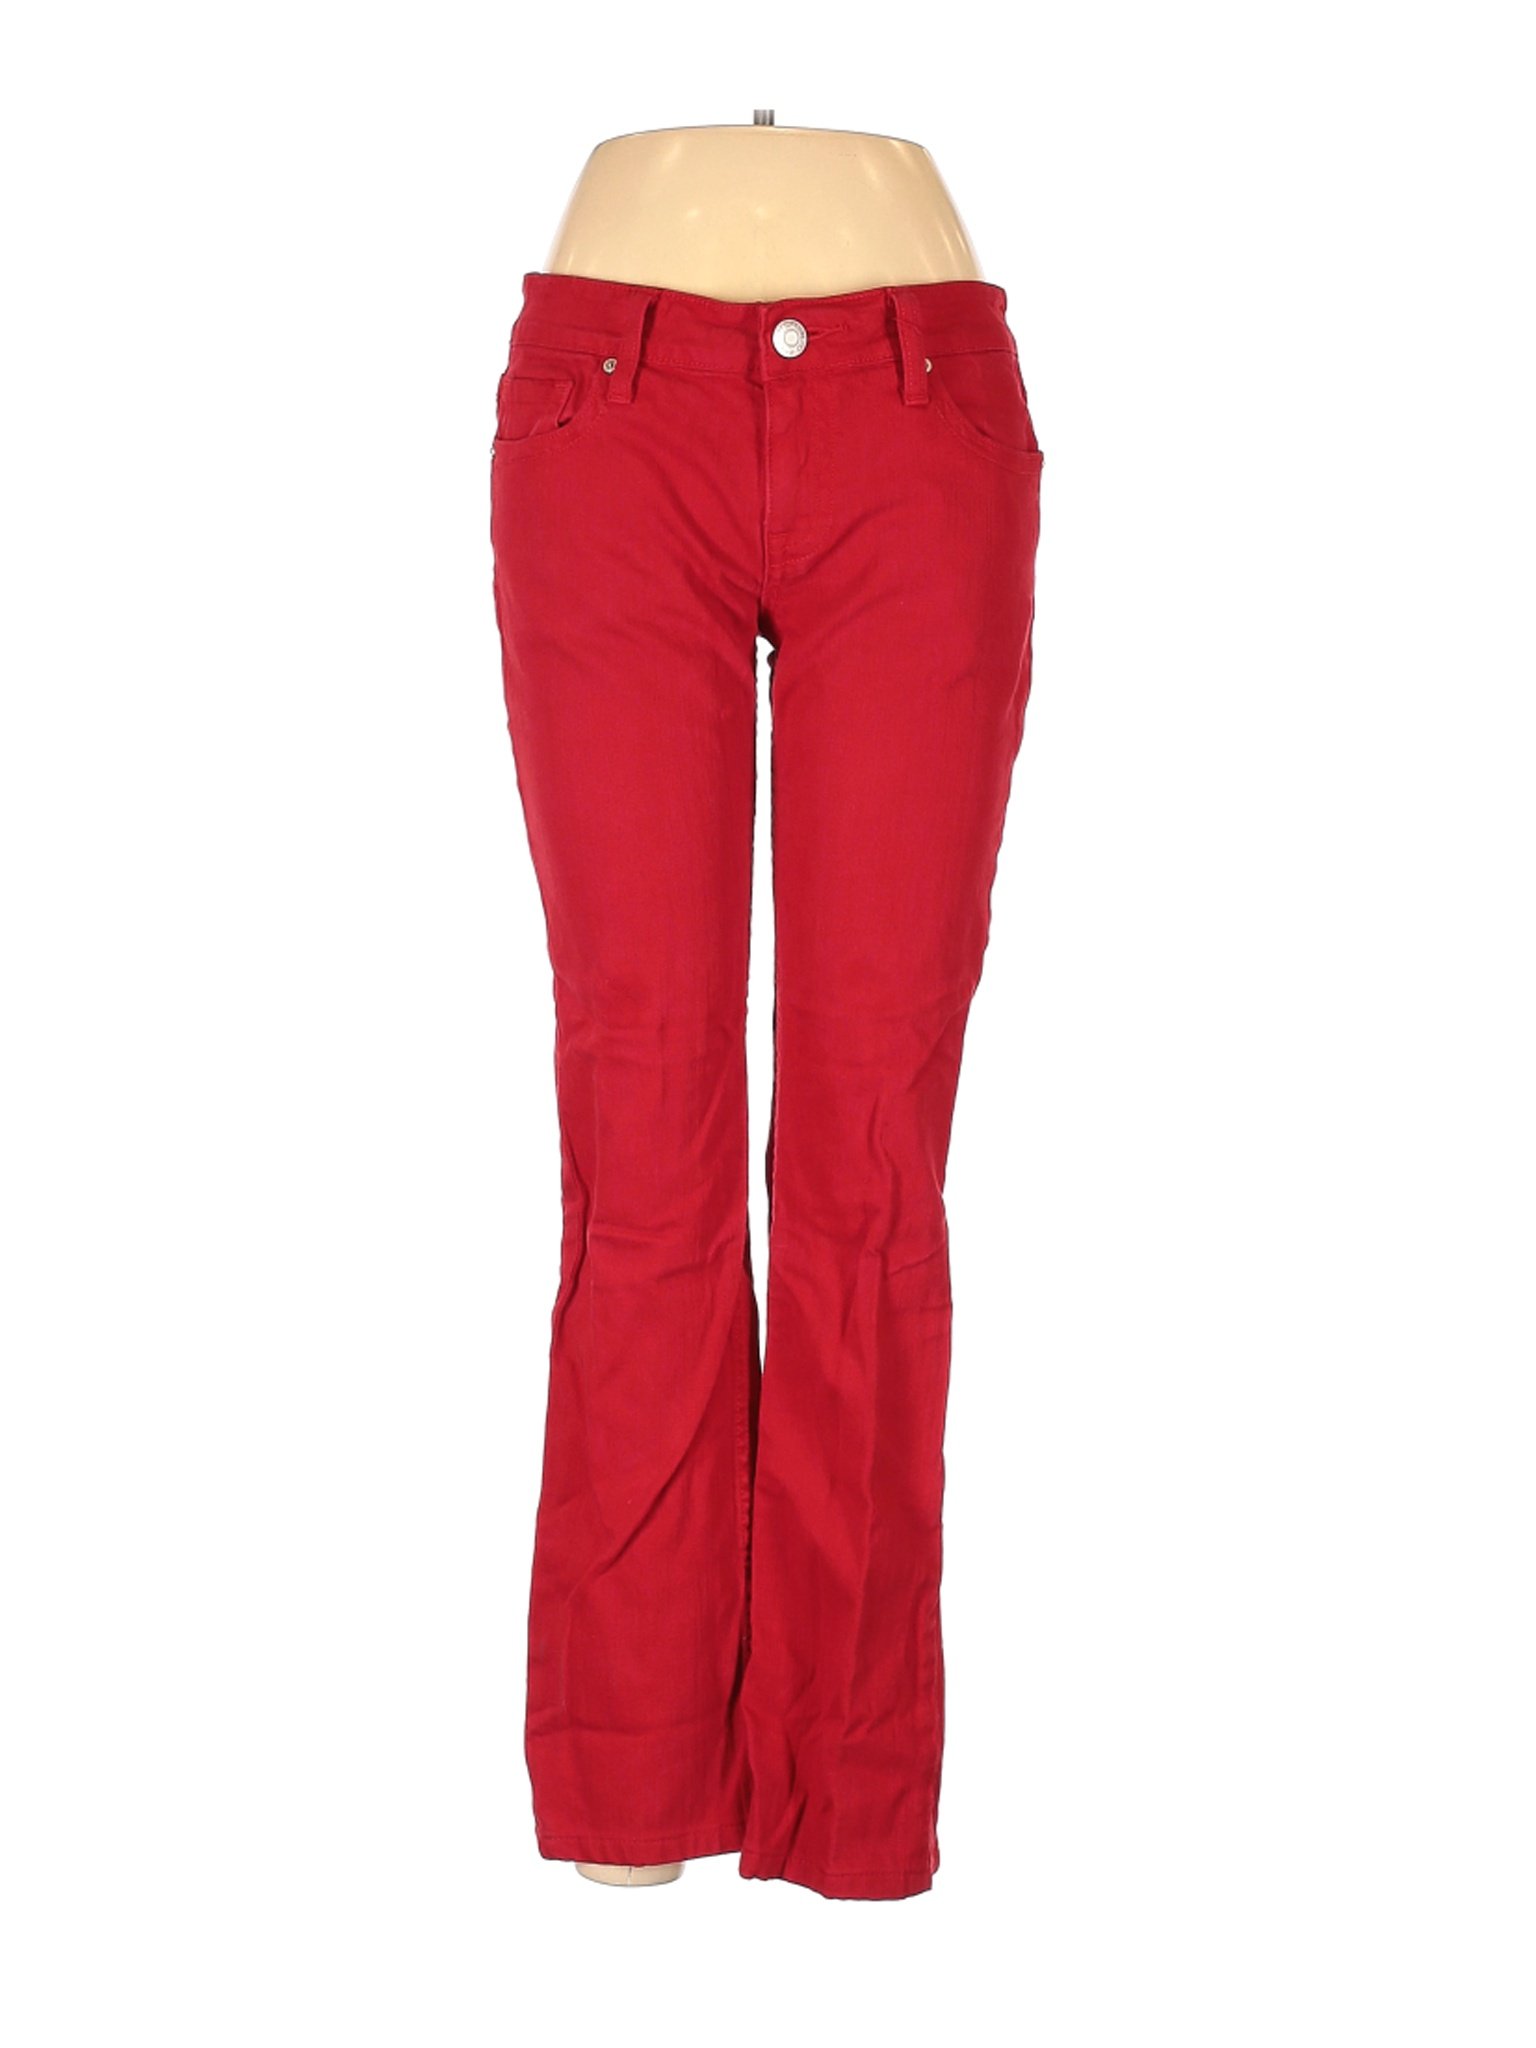 VERTIGO Women Red Jeans 29W | eBay